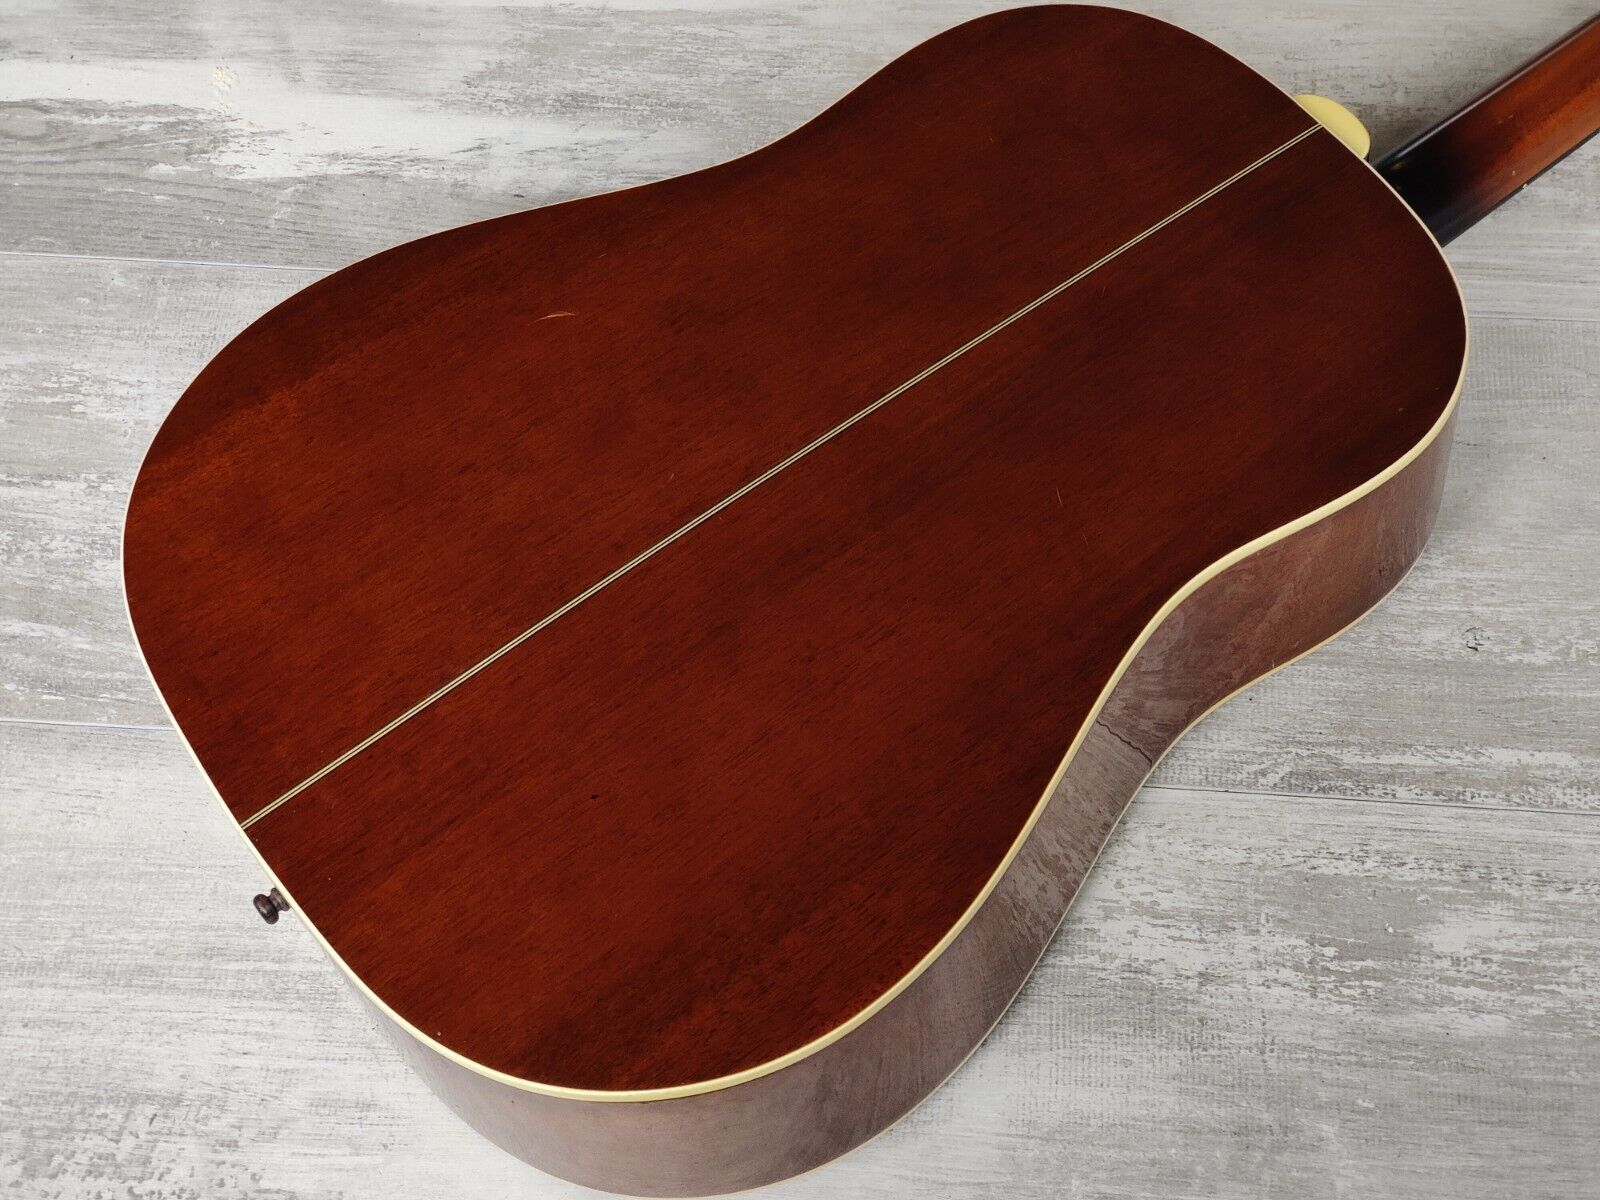 Epiphone 1963 AJ-45 Acoustic Guitar (Natural)